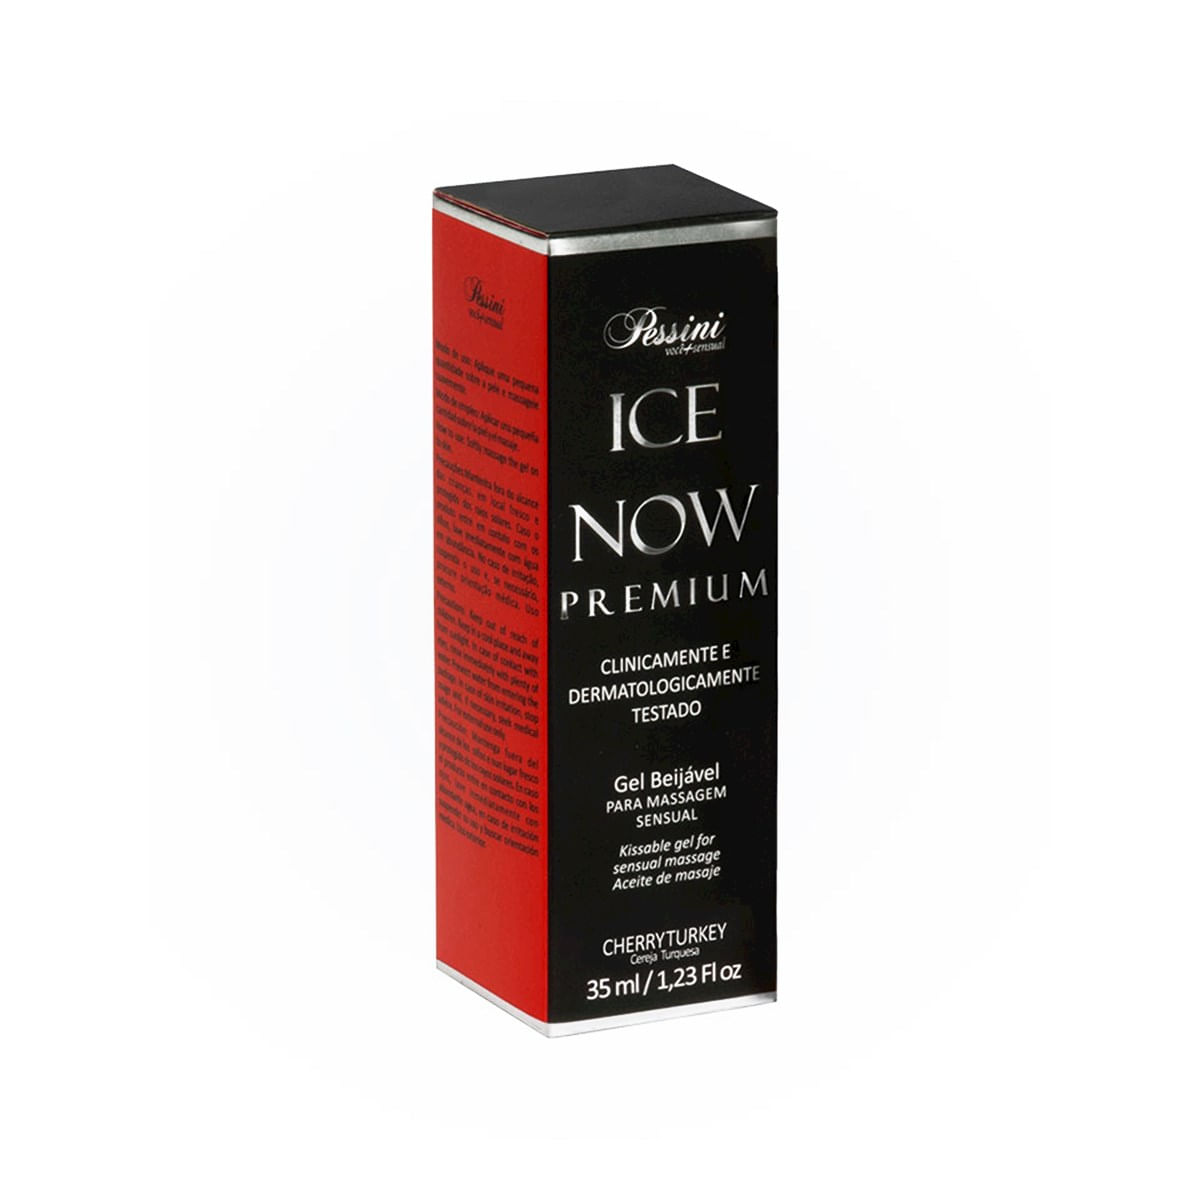 Ice Now Premium Cereja Turquesa 35ml Pessini